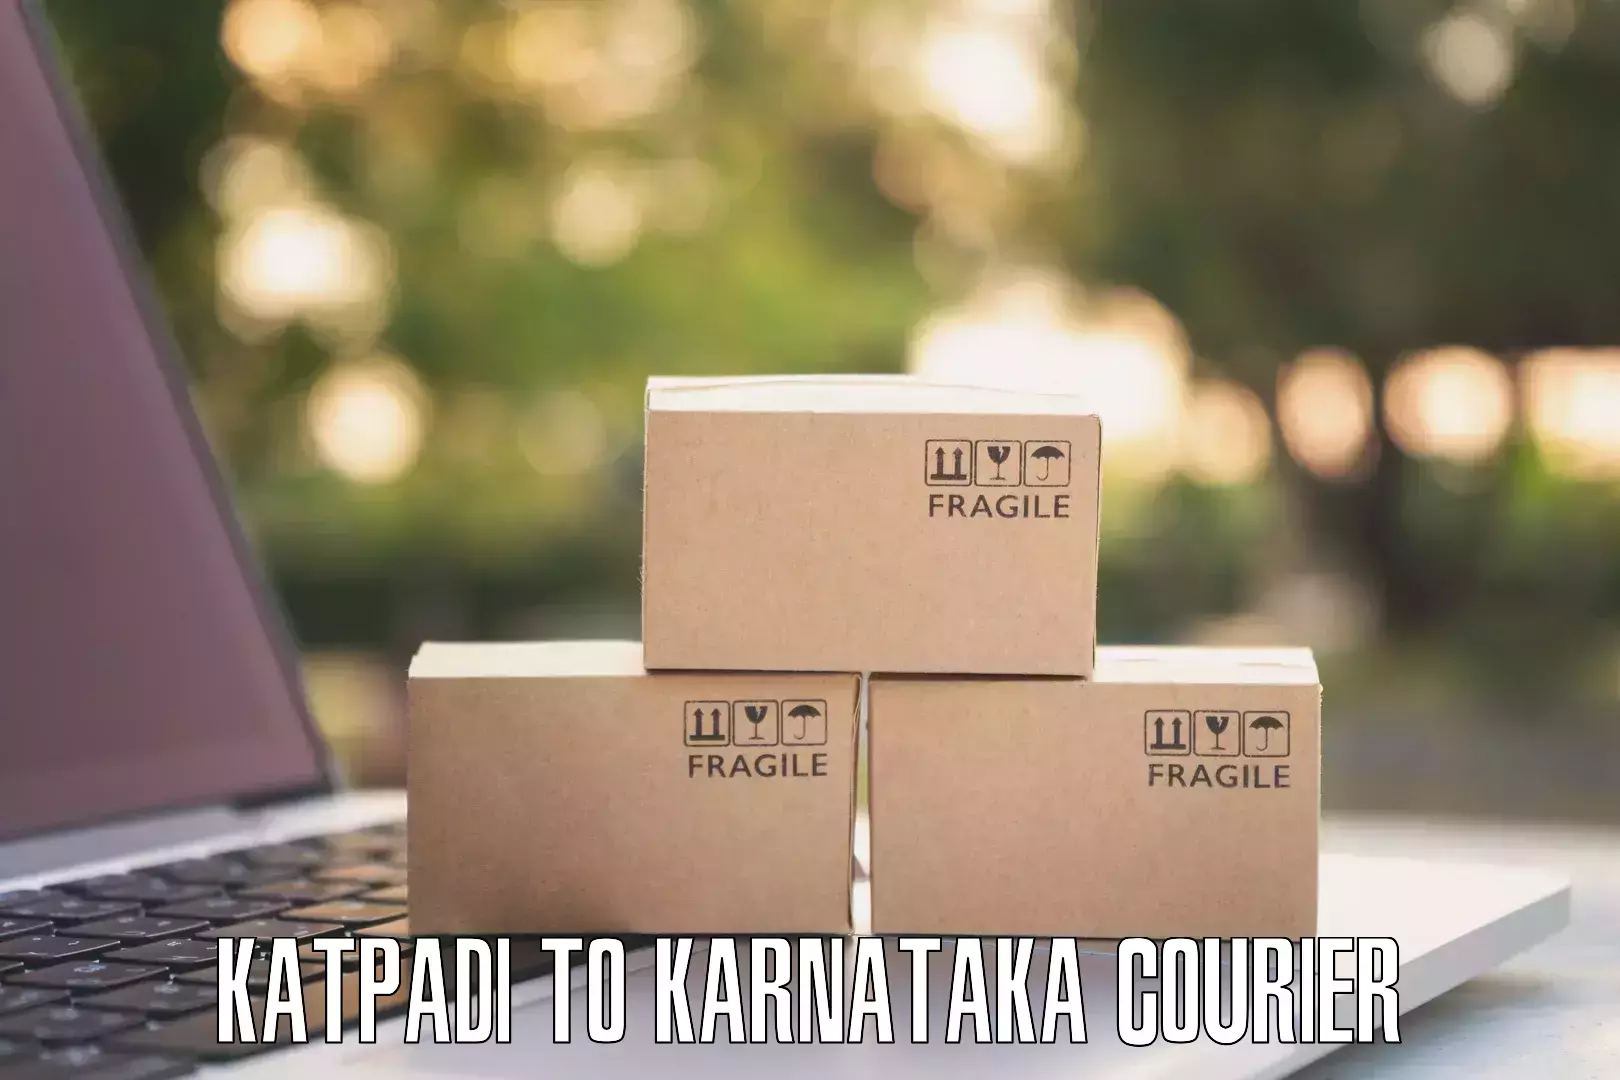 Modern delivery methods in Katpadi to Alnavar